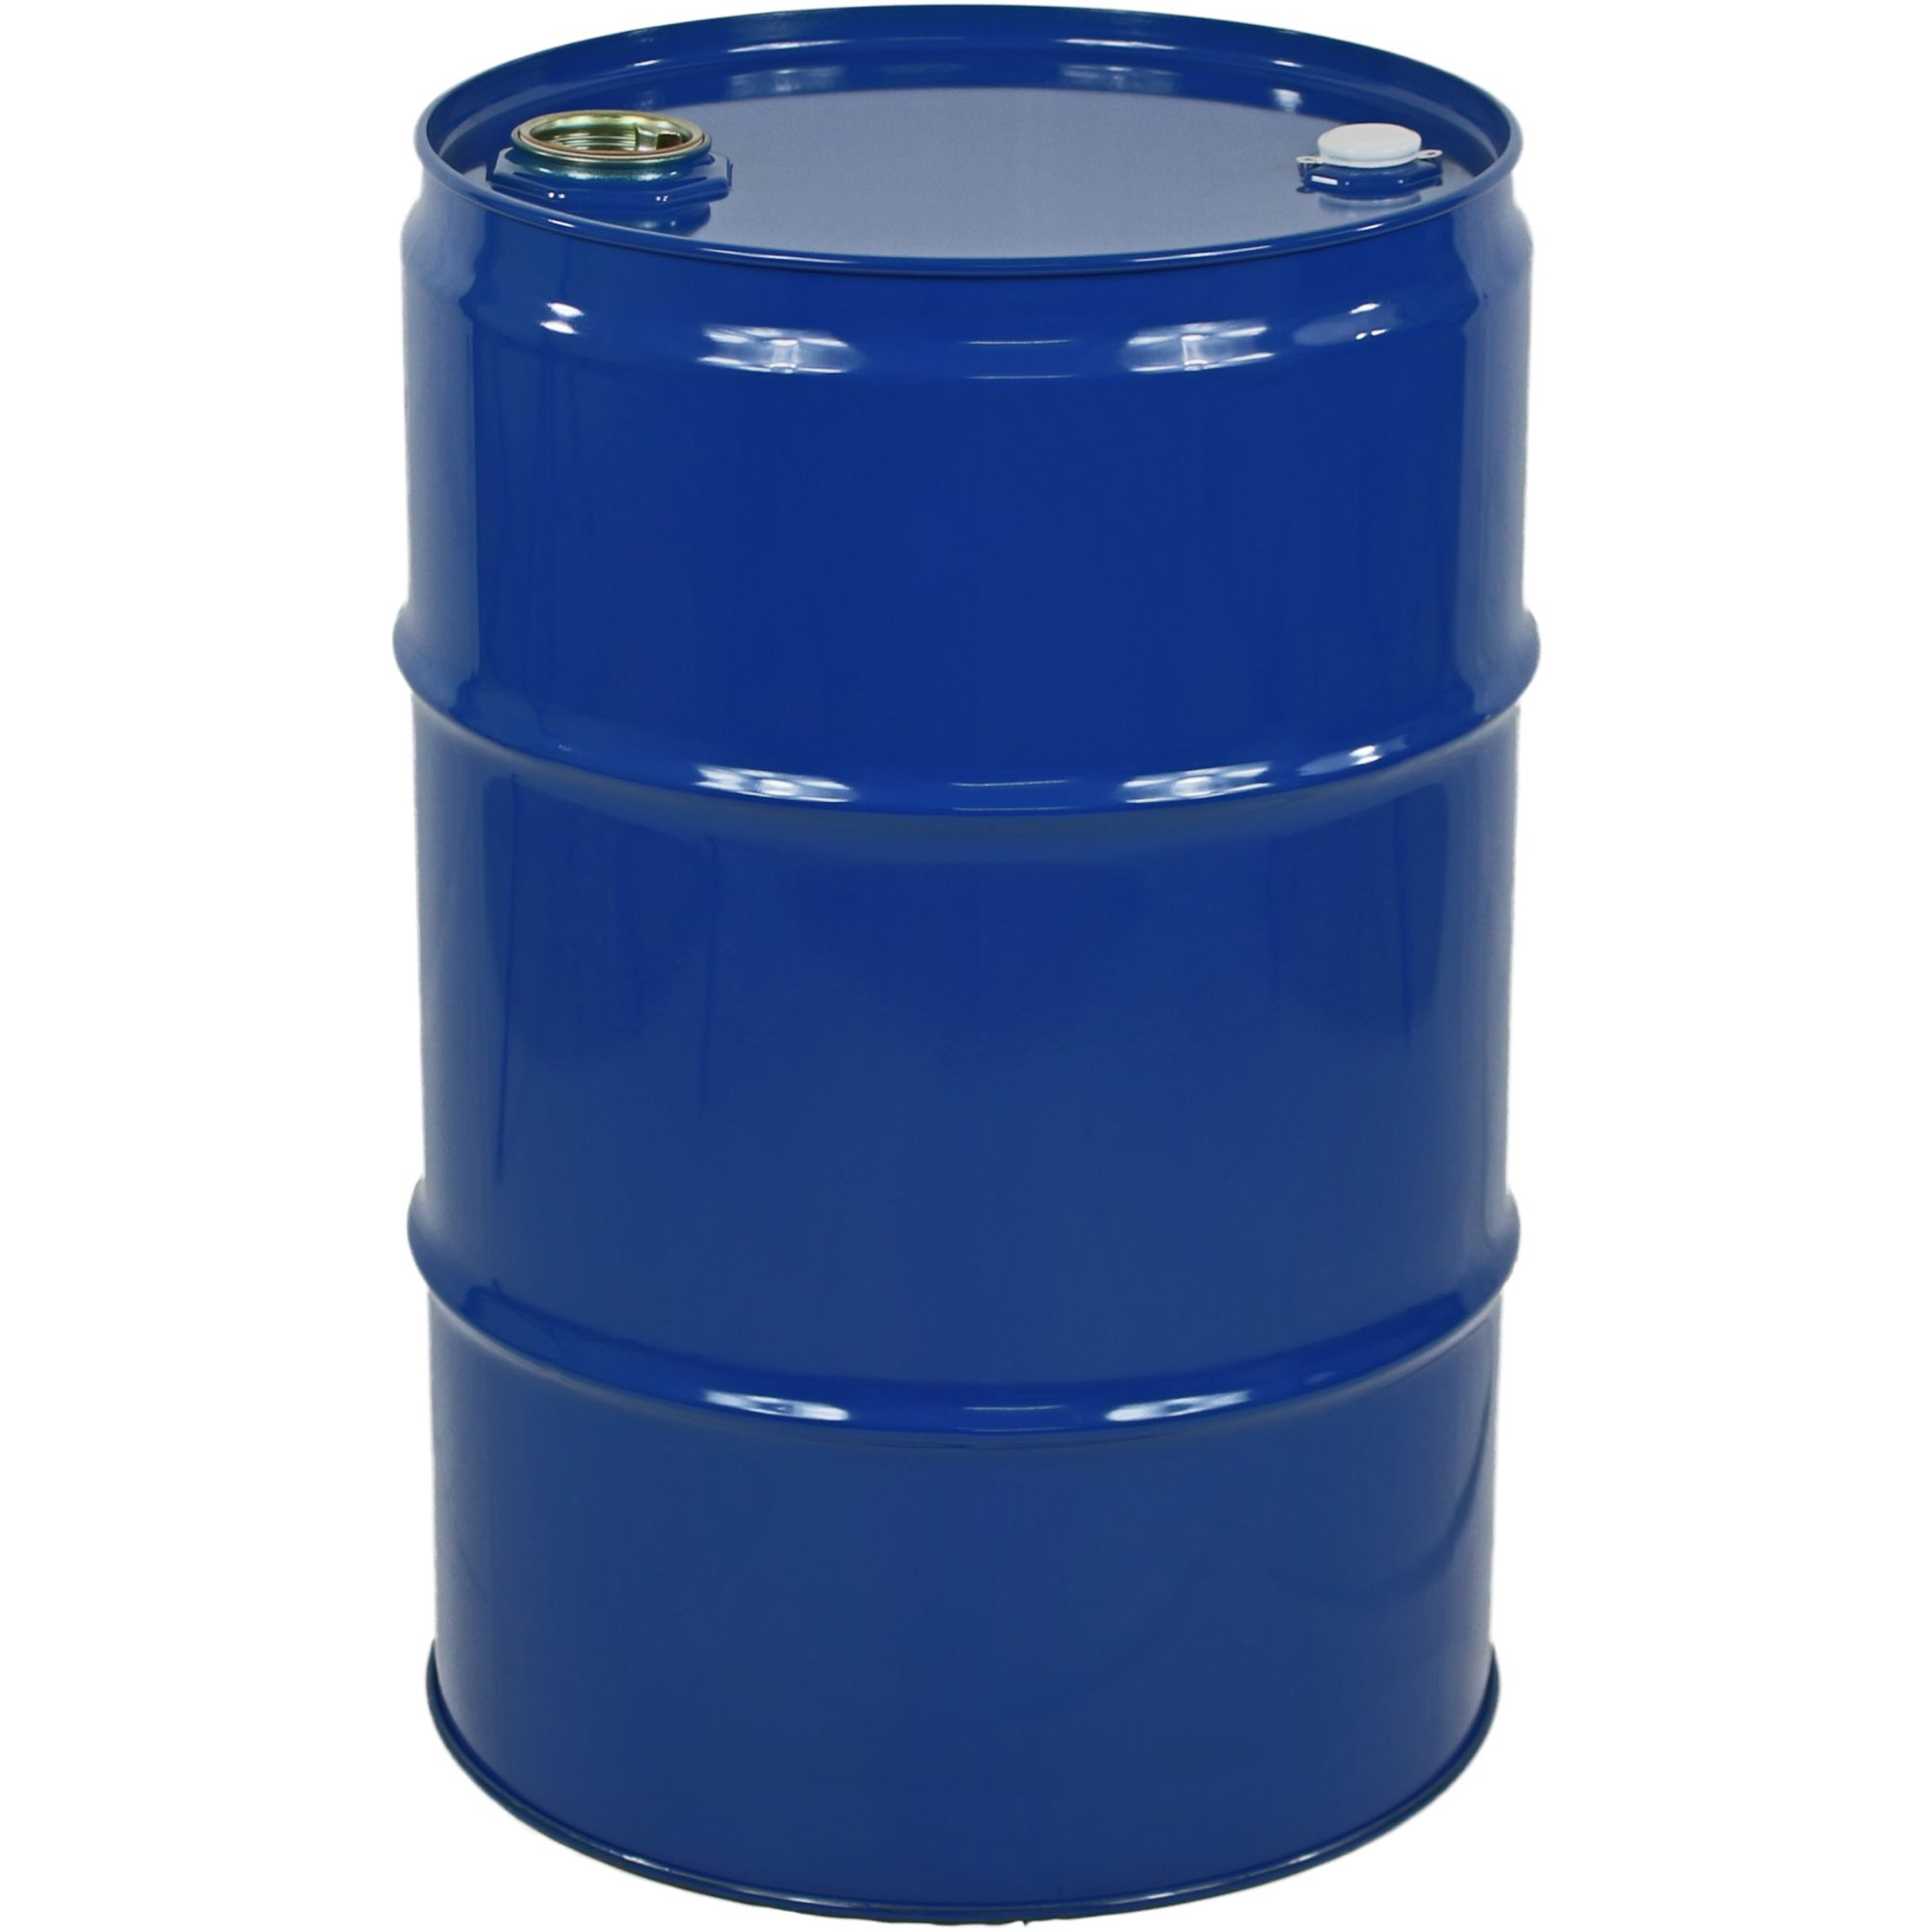 Garagenfass 65,0 Liter